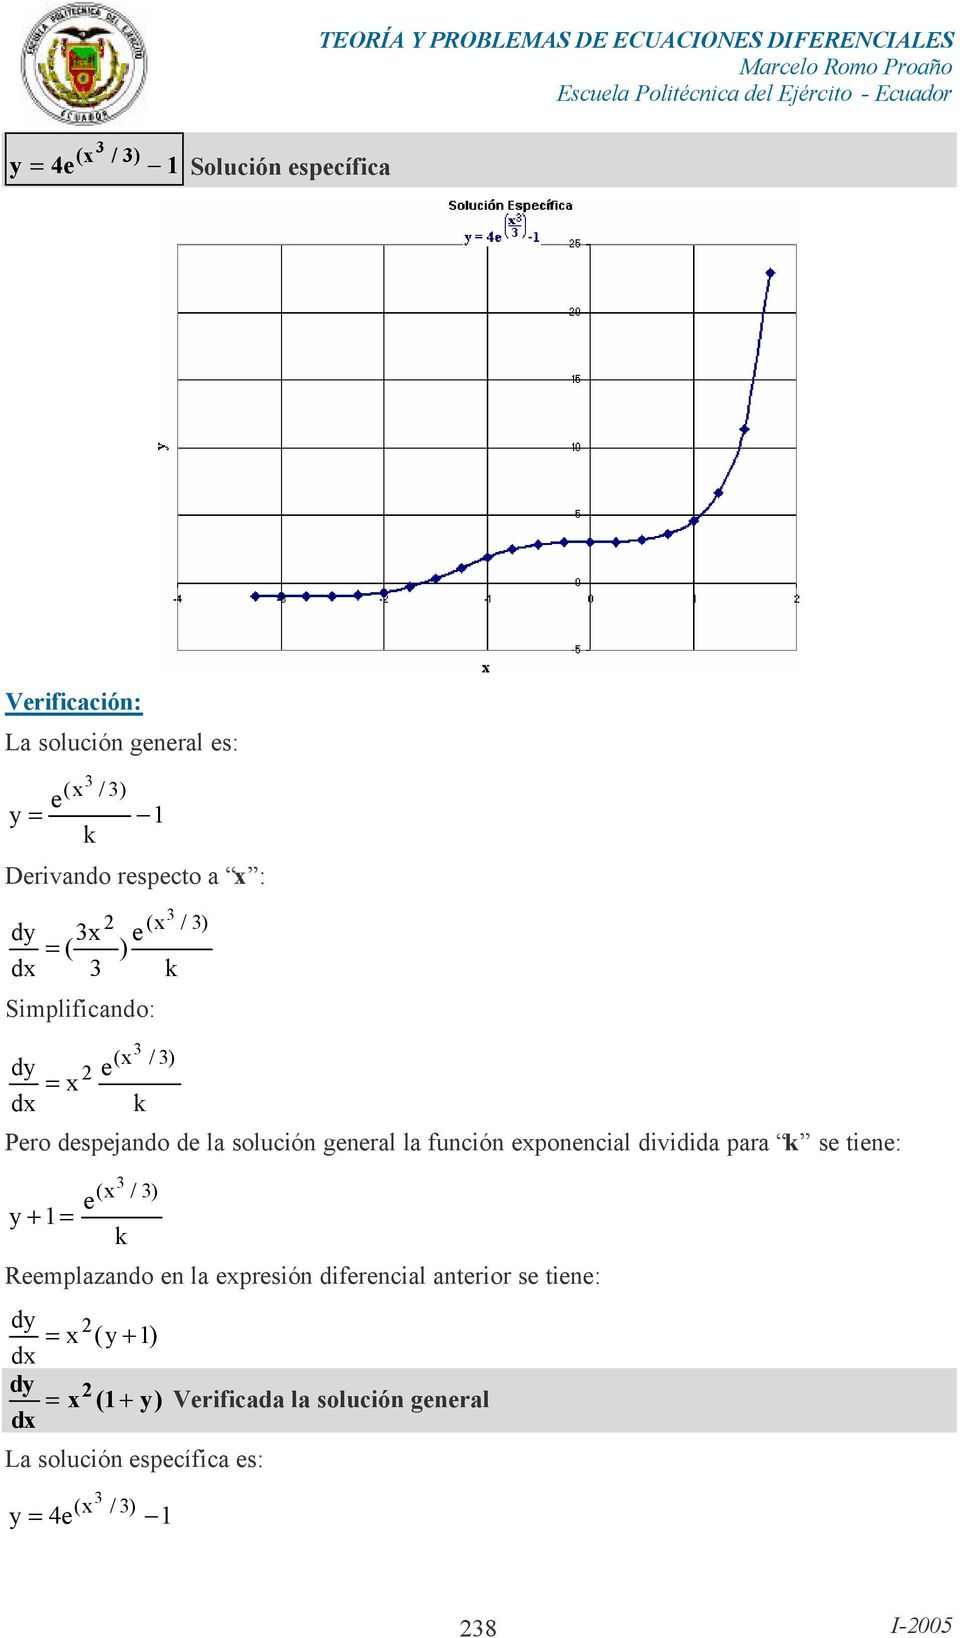 (x / ) / ) Pro dspjando d la solución gnral la función xponncial dividida para s tin: + = ( x / ) Rmplazando n la